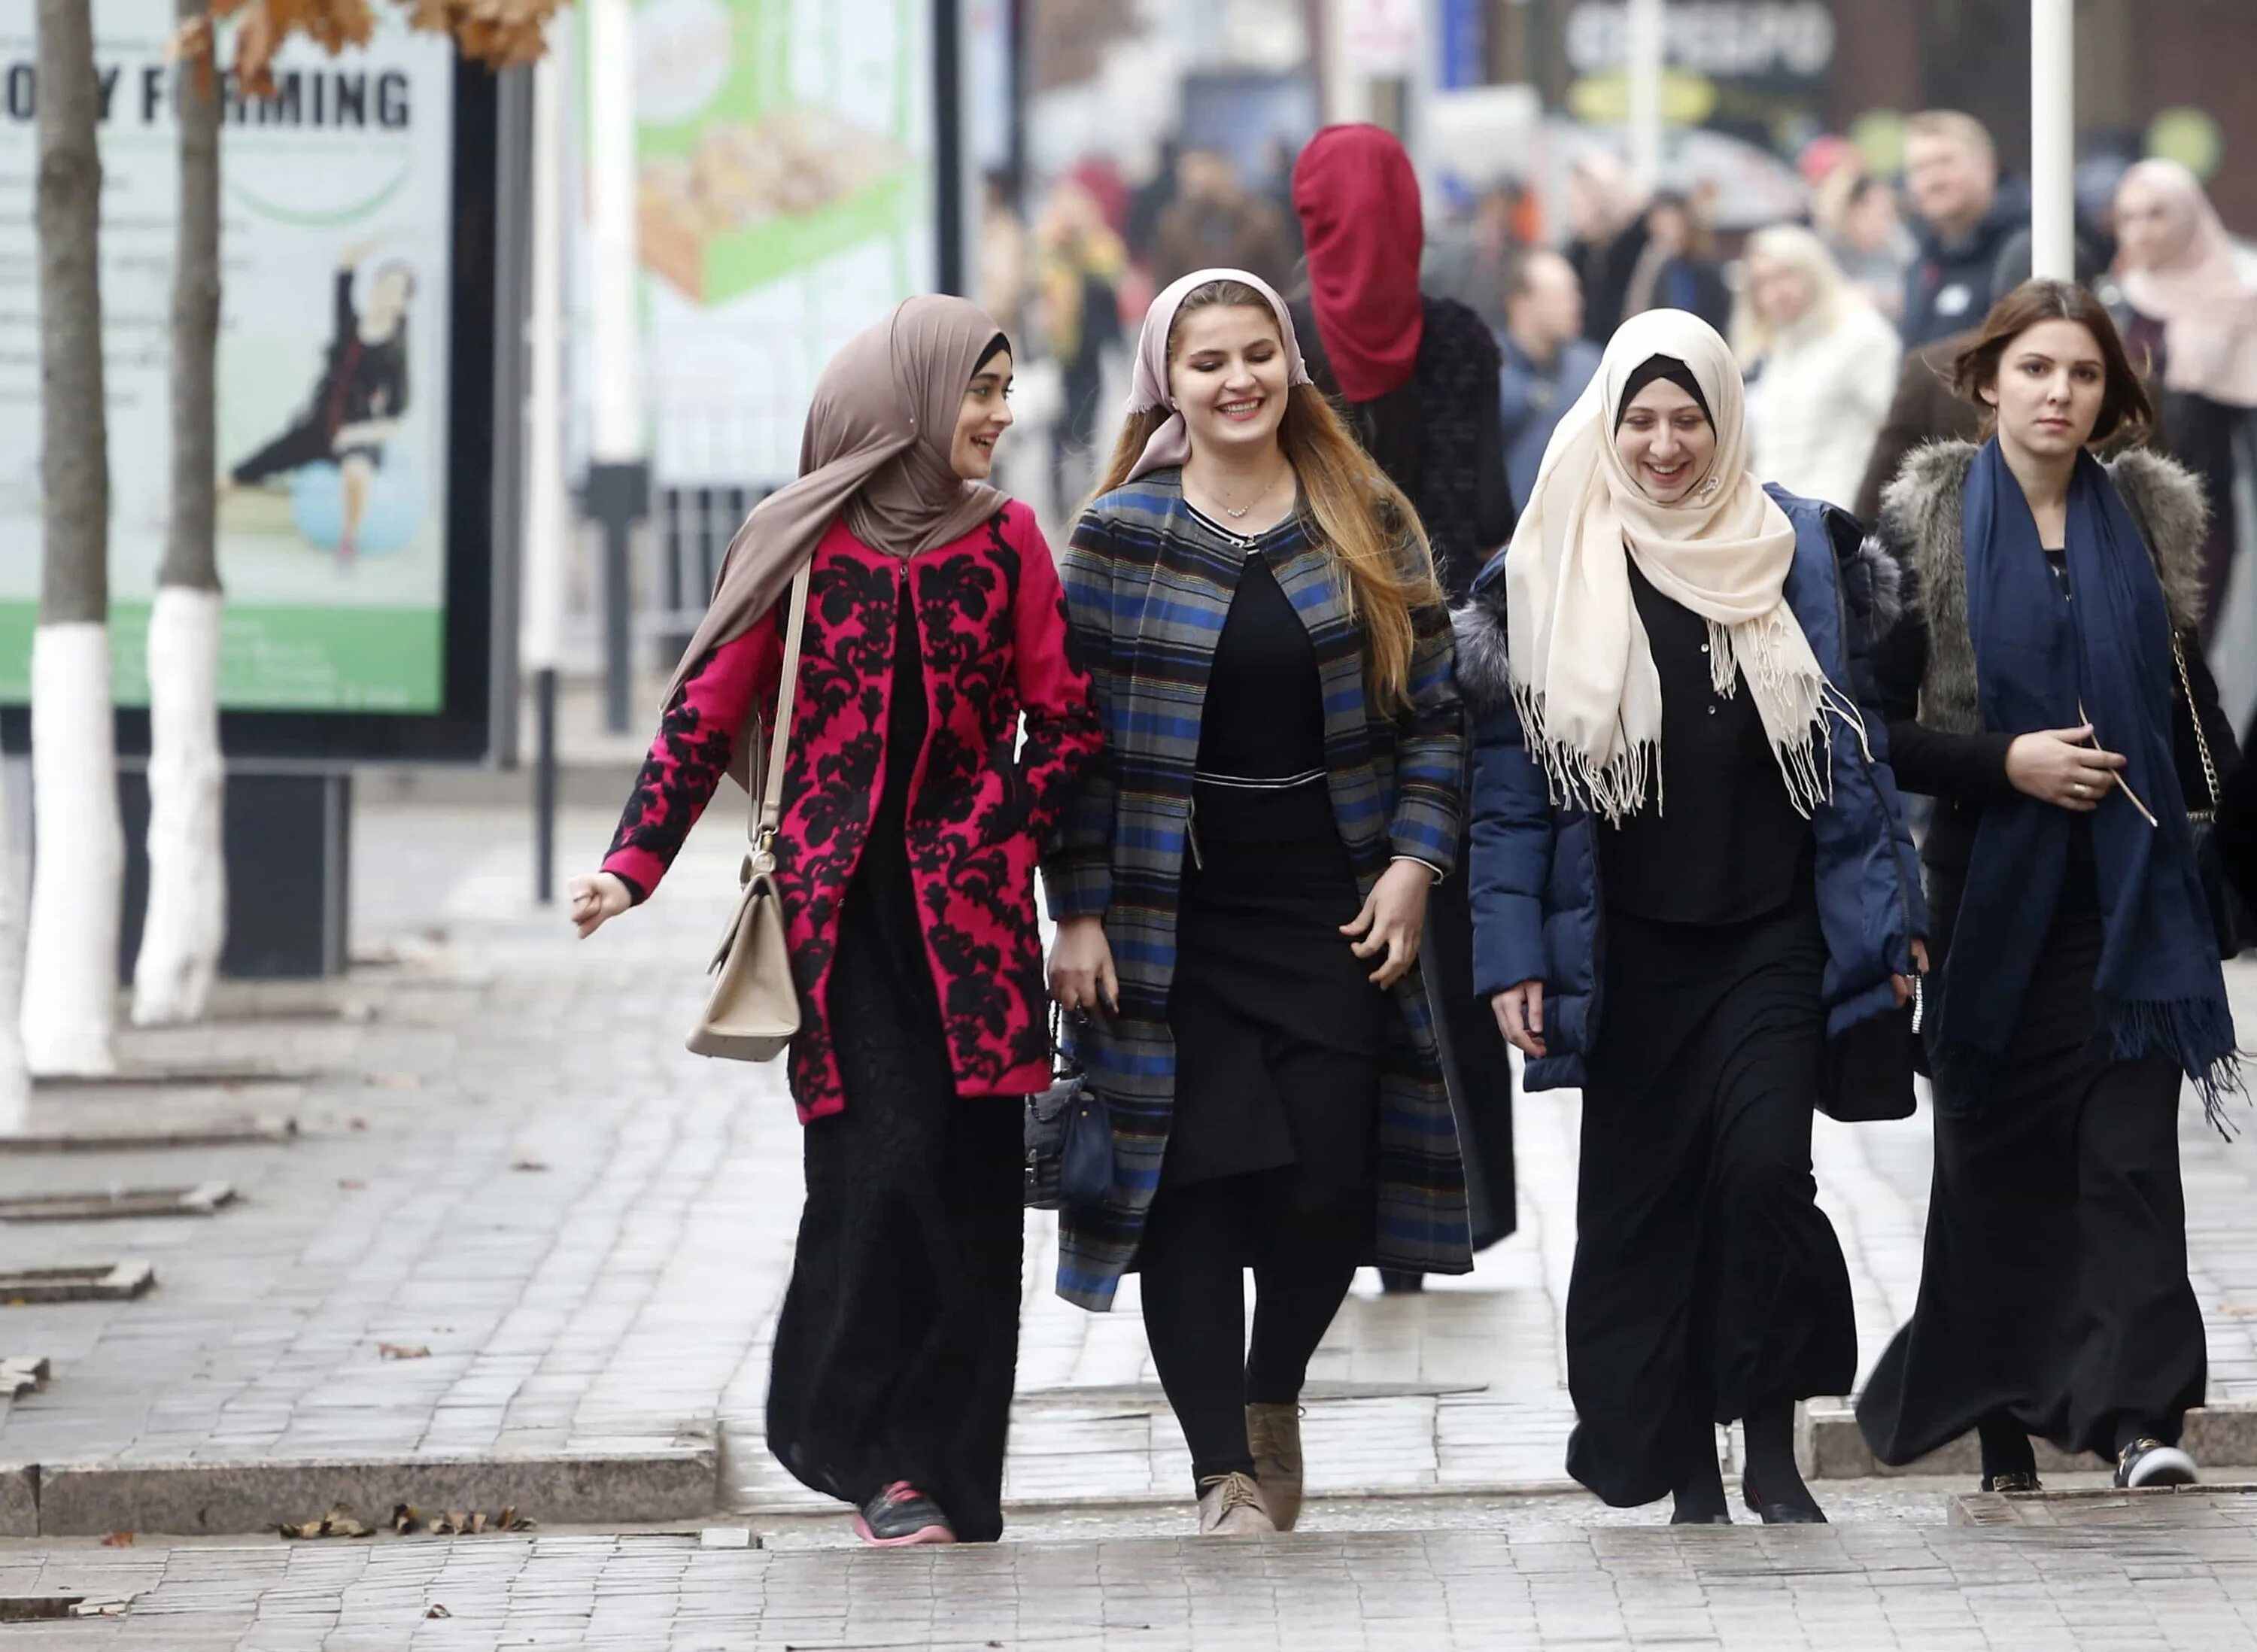 Грозная женщина. Чеченская одежда для женщин Повседневная. Одежда чеченских женщин на улице. Одежда в Чечне для женщин.